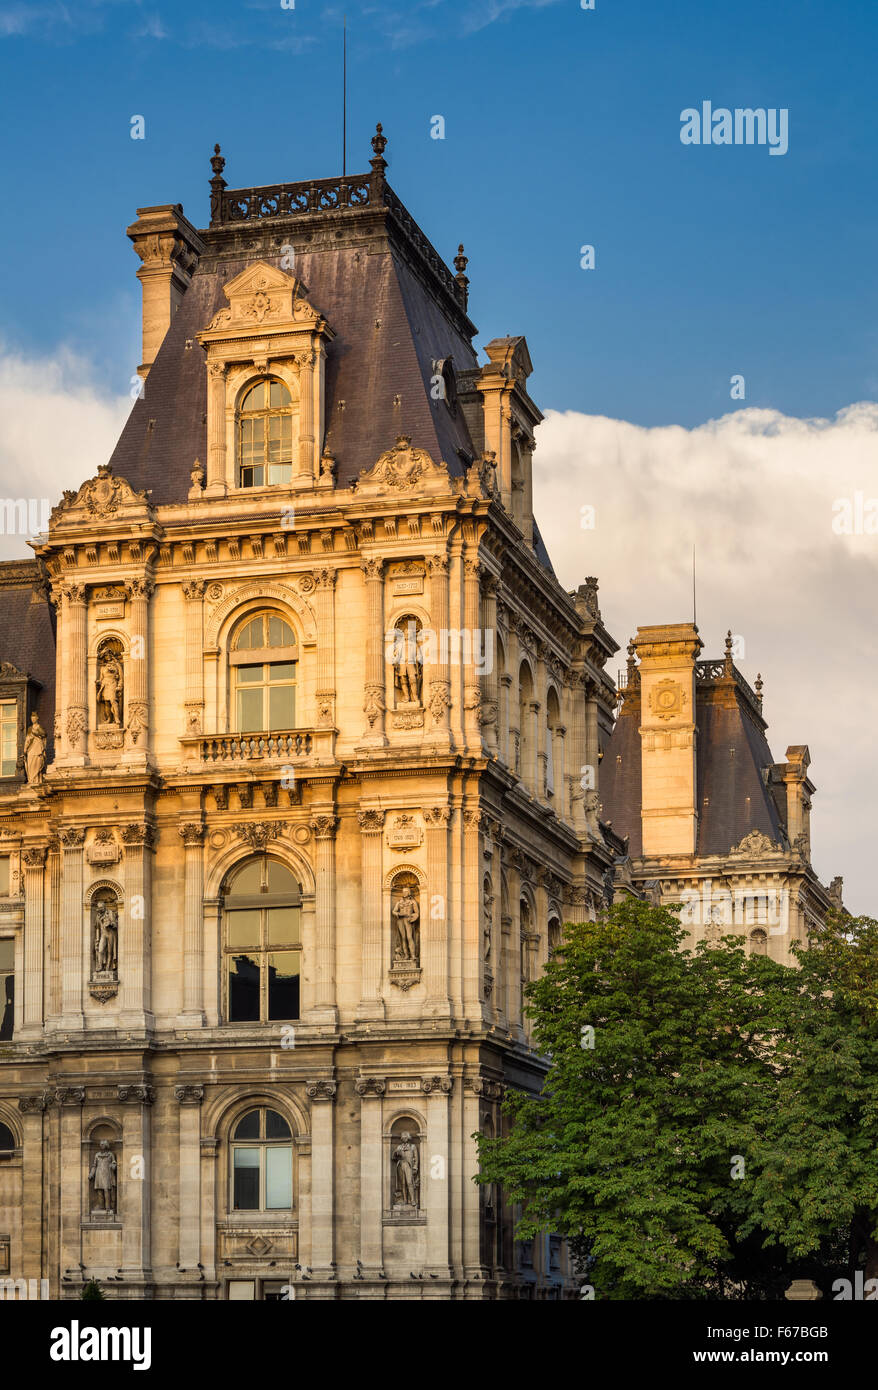 Dettaglio del revival rinascimentale della città di Parigi facciata Hall prima del tramonto. Statue riconoscere storicamente importante parigini. Francia Foto Stock